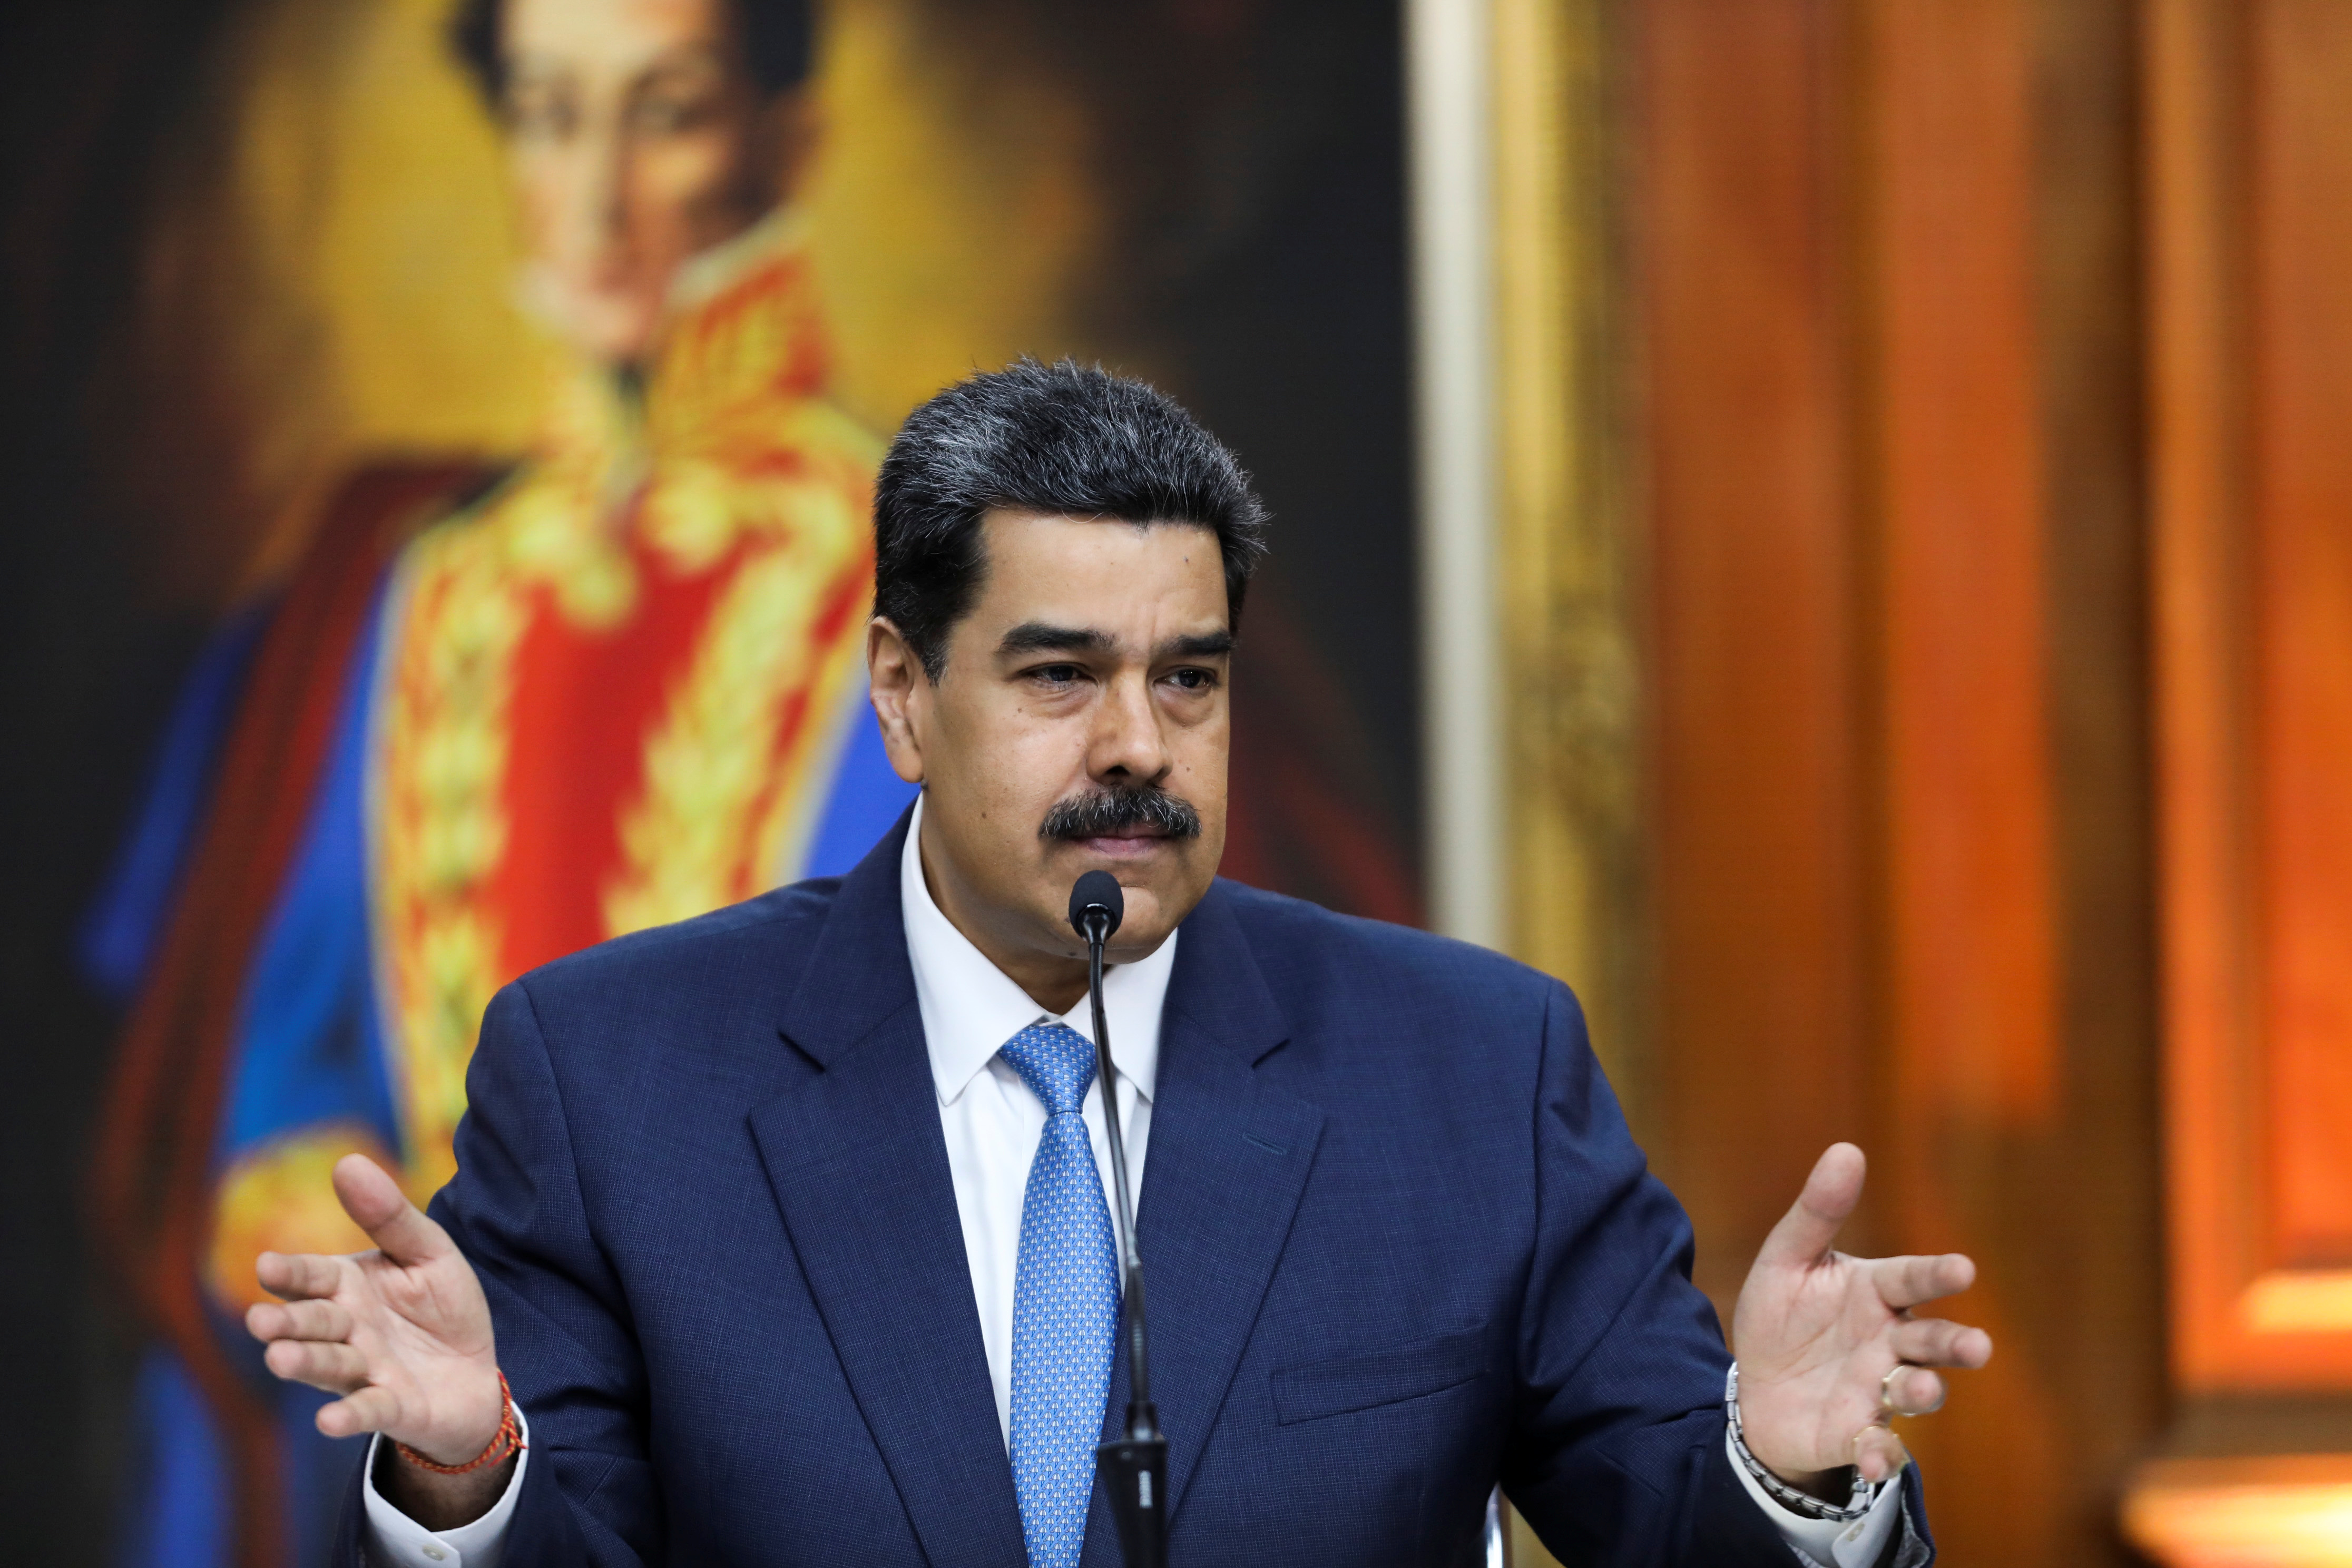 Dolarización en Venezuela: Maduro permitió el uso de divisas y ahora “quiere consultar” la medida